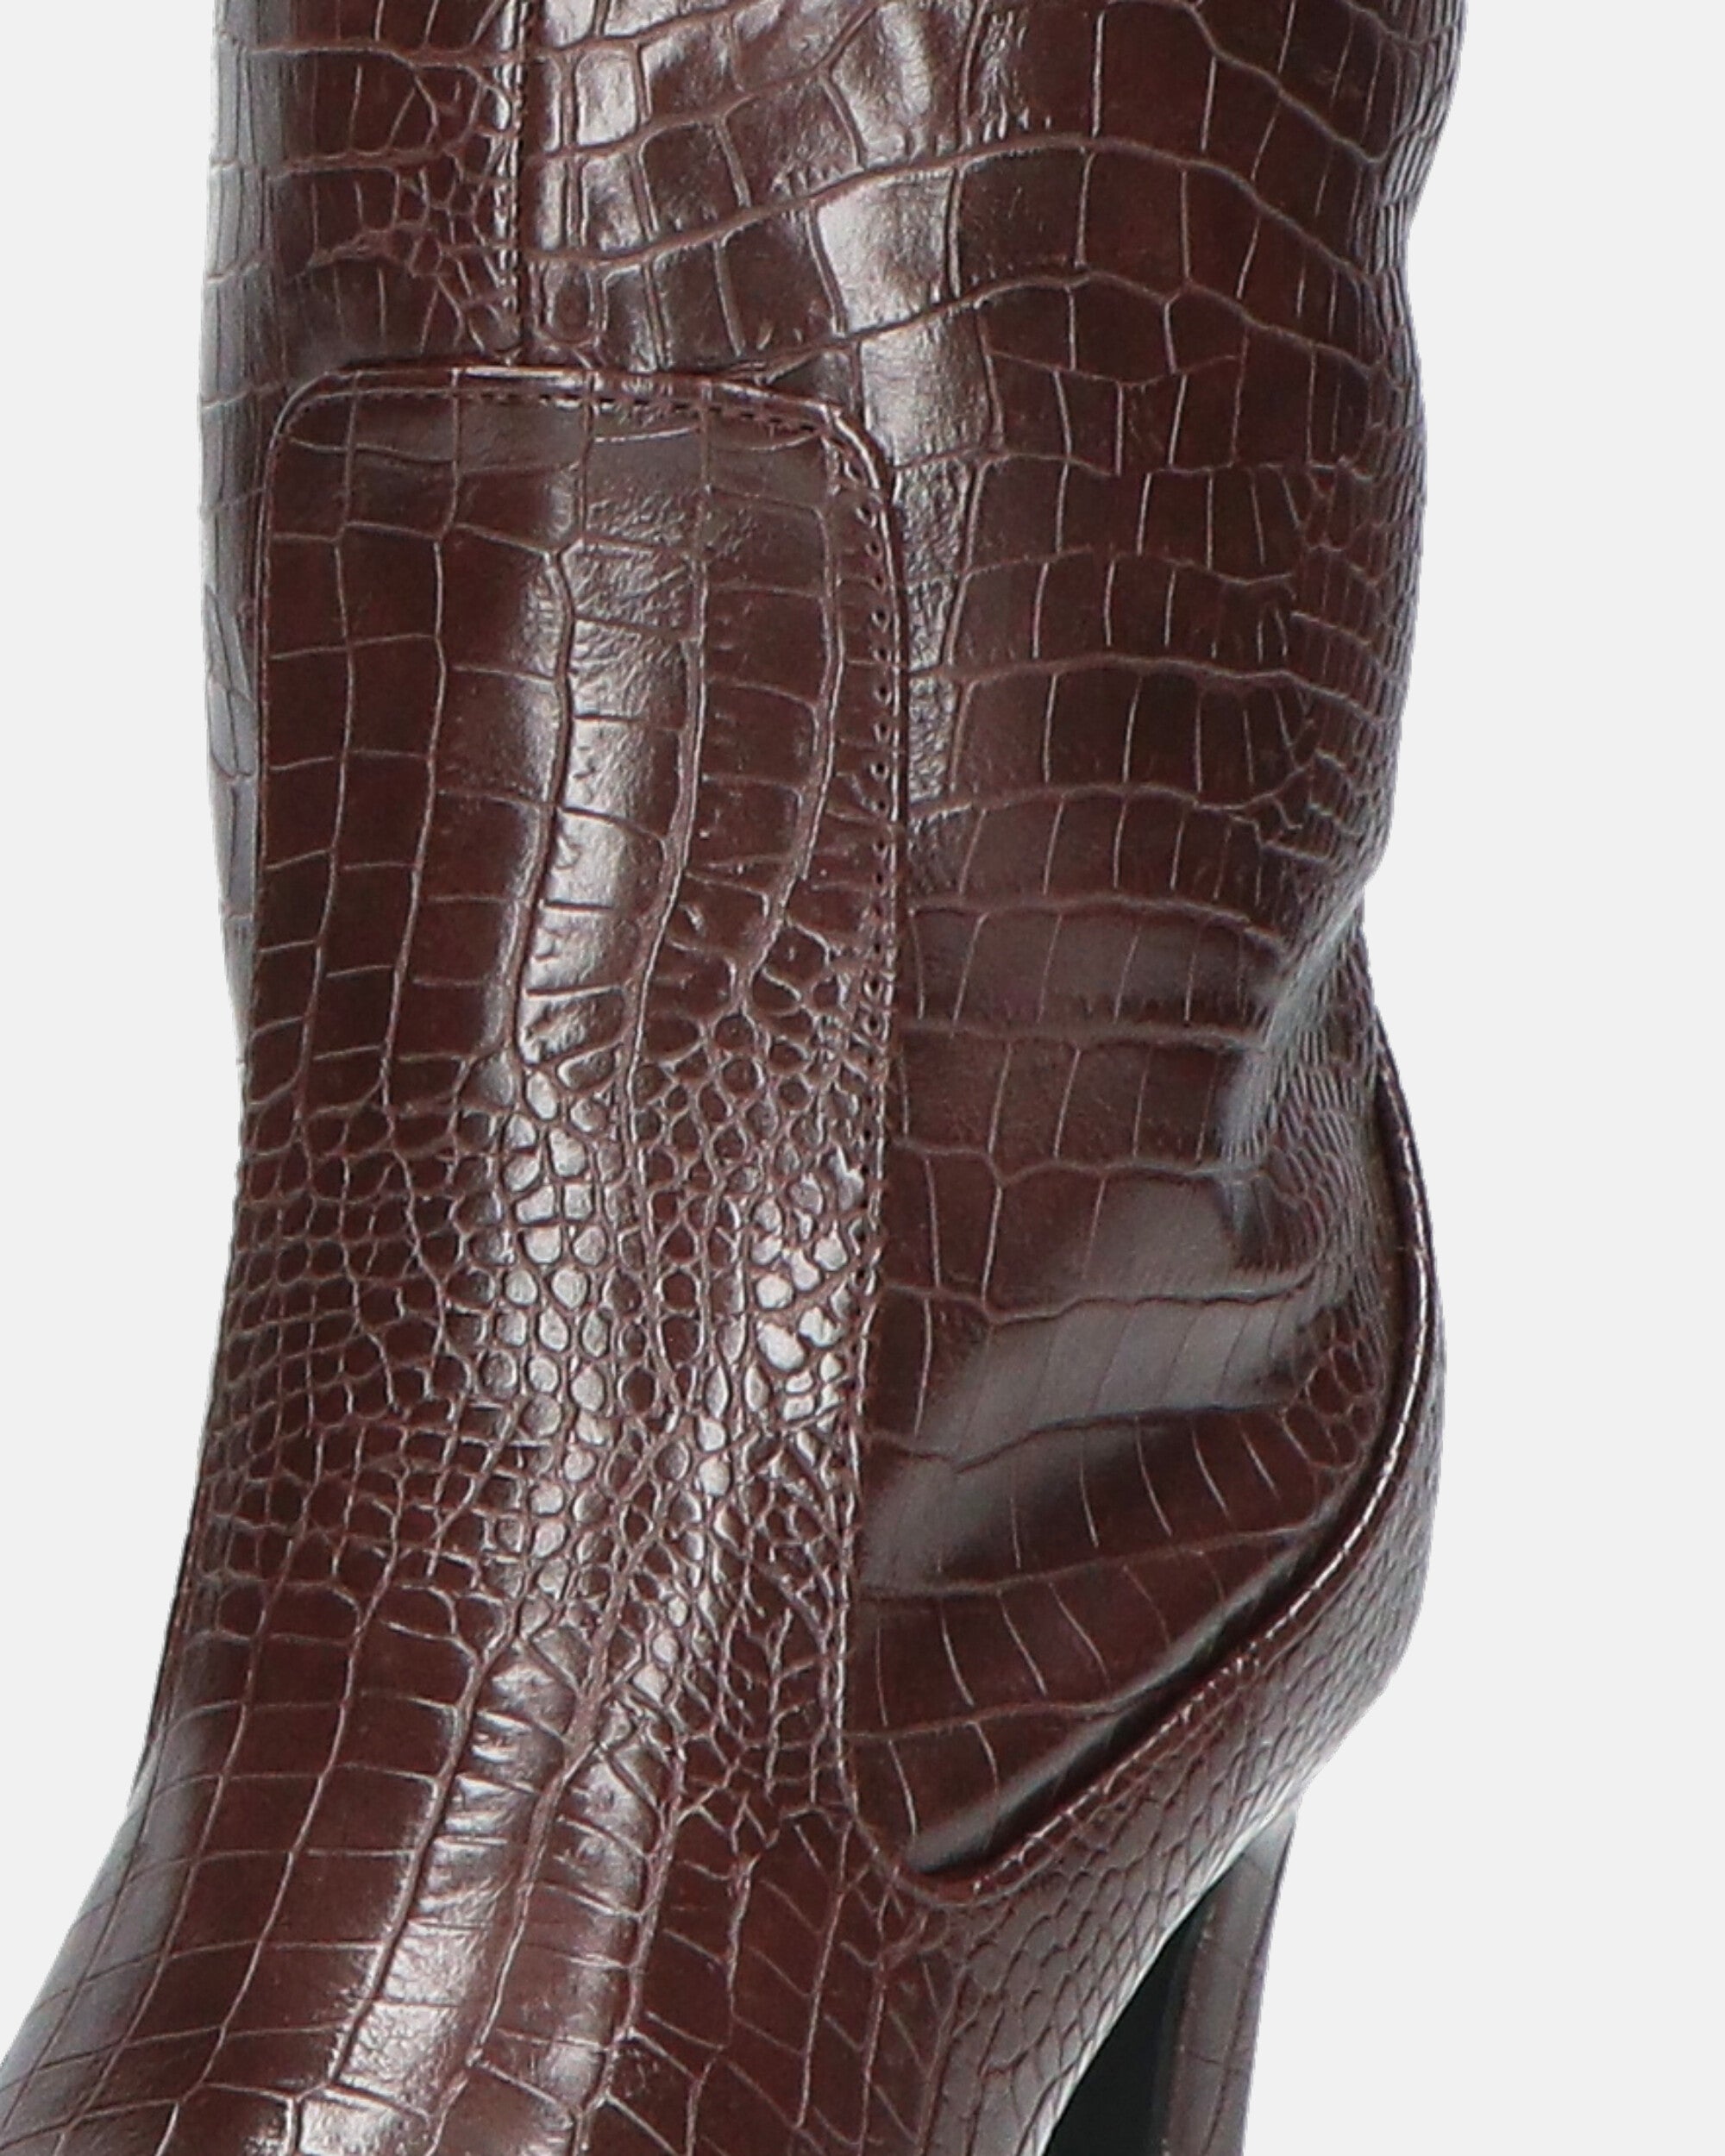 CAROLINE - bota de tacón en pitón marrón oscuro